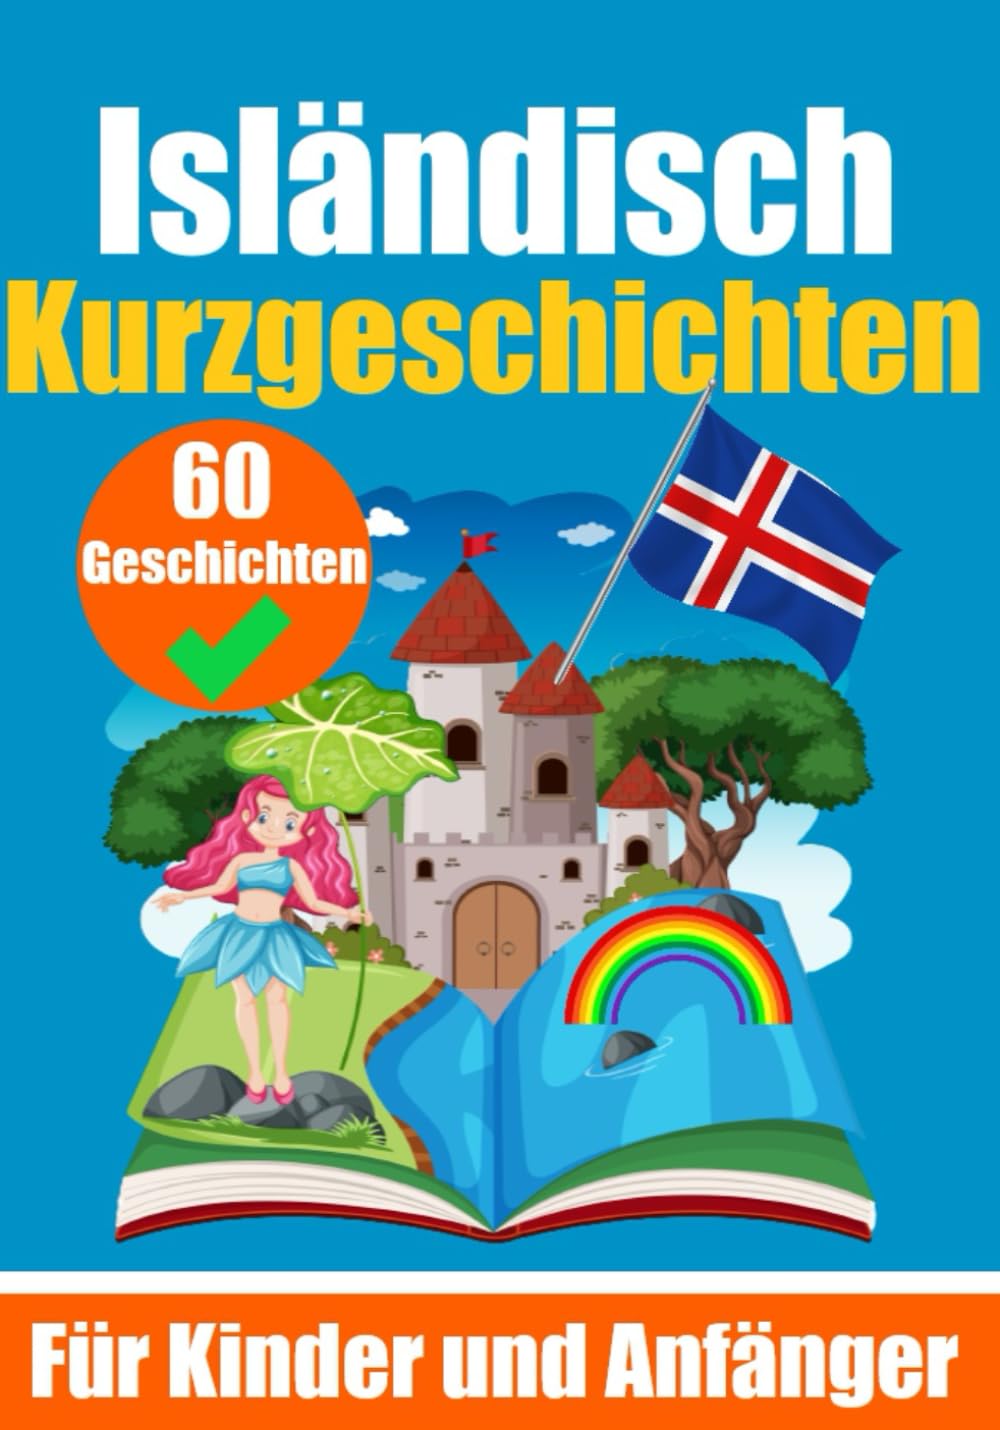 60 Kurzgeschichten auf Isländisch | Ein Buch zum Erlernen der isländischen Sprache für Kinder und Anfänger